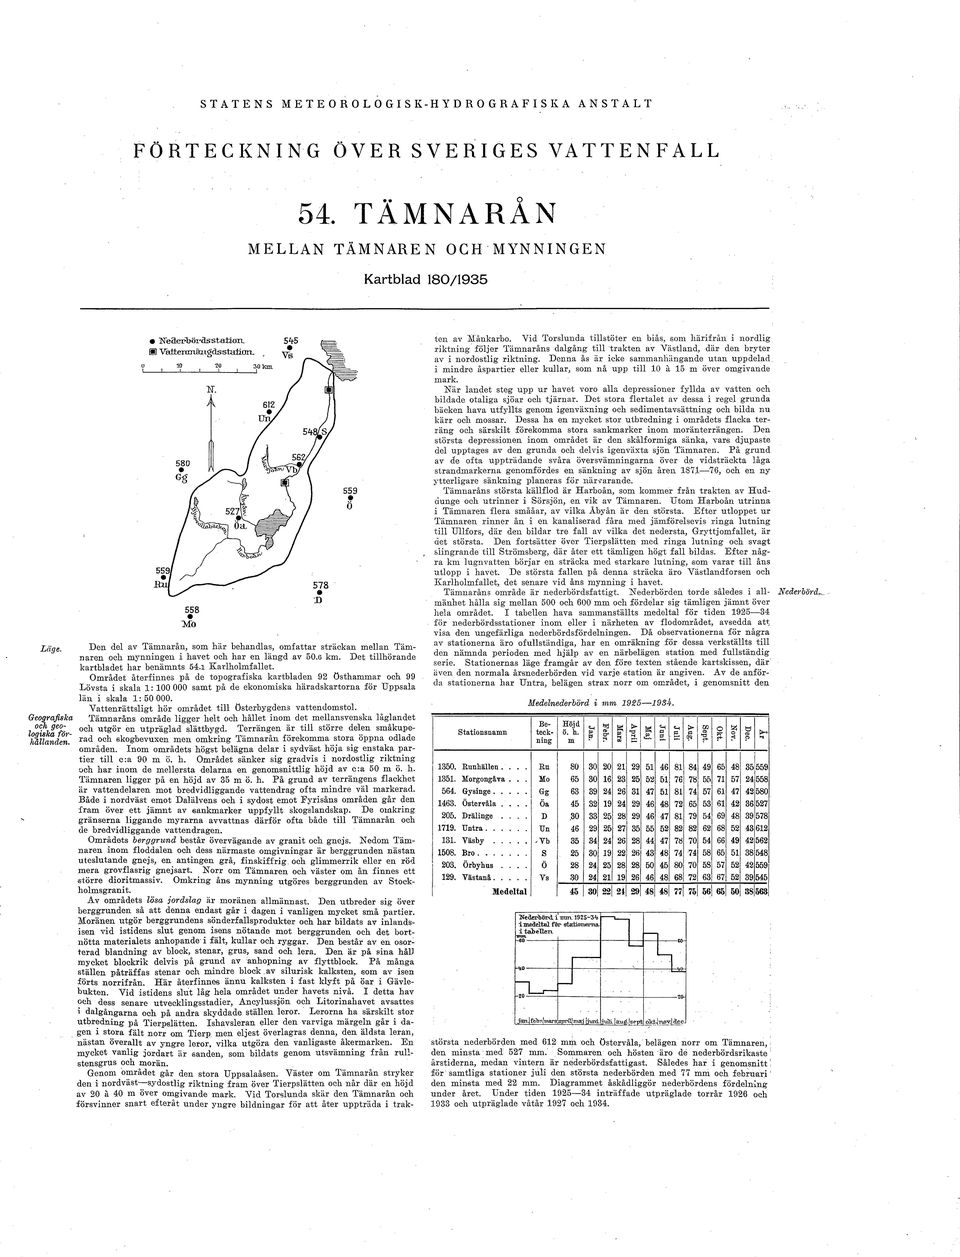 Den del av Tämnarån, som här behandlas, omfattar sträckan mellan Tamii aren och mynningen i havet och har en längd av 50.6 km. Det tillhörande kartbladet har benämnts 54.1 Karlholmfallet.